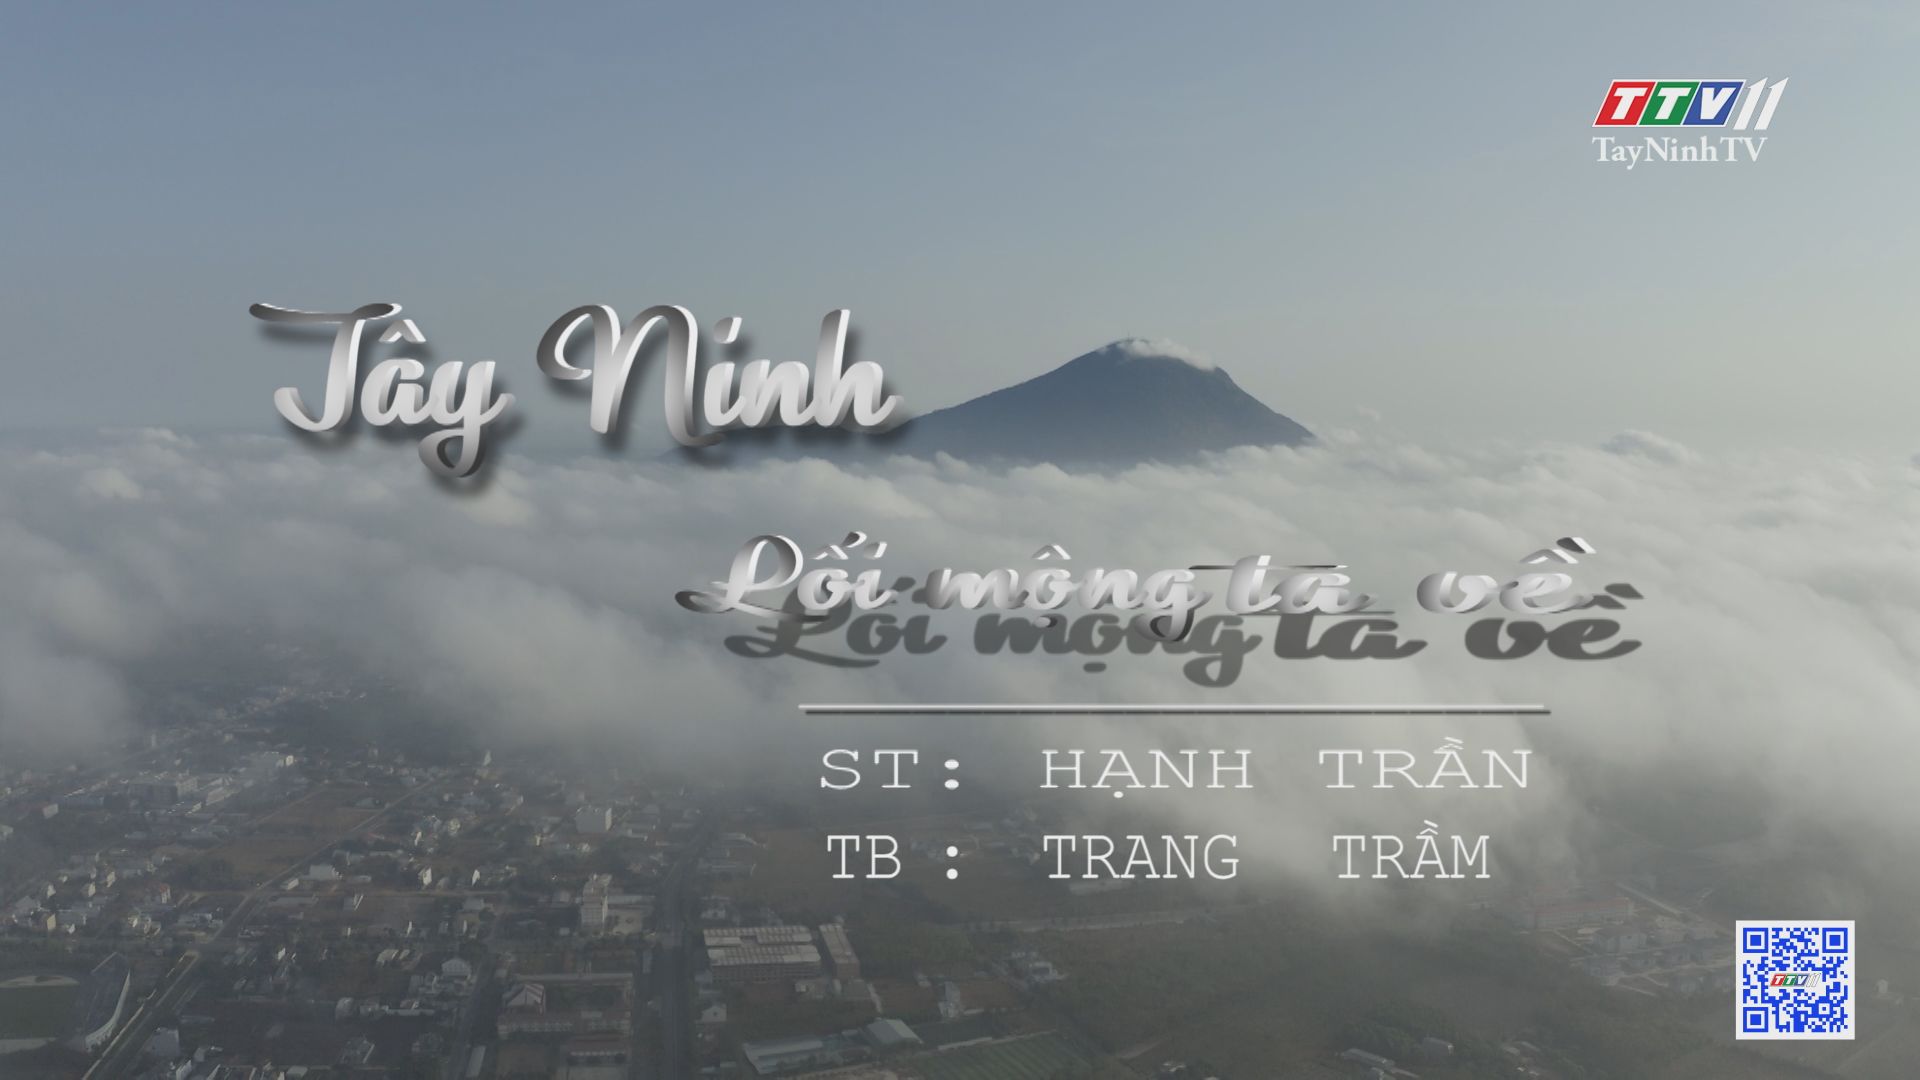 Tây Ninh Lối Mộng Ta Về - Trang Trầm (MV Officical) | TayNinhTV 